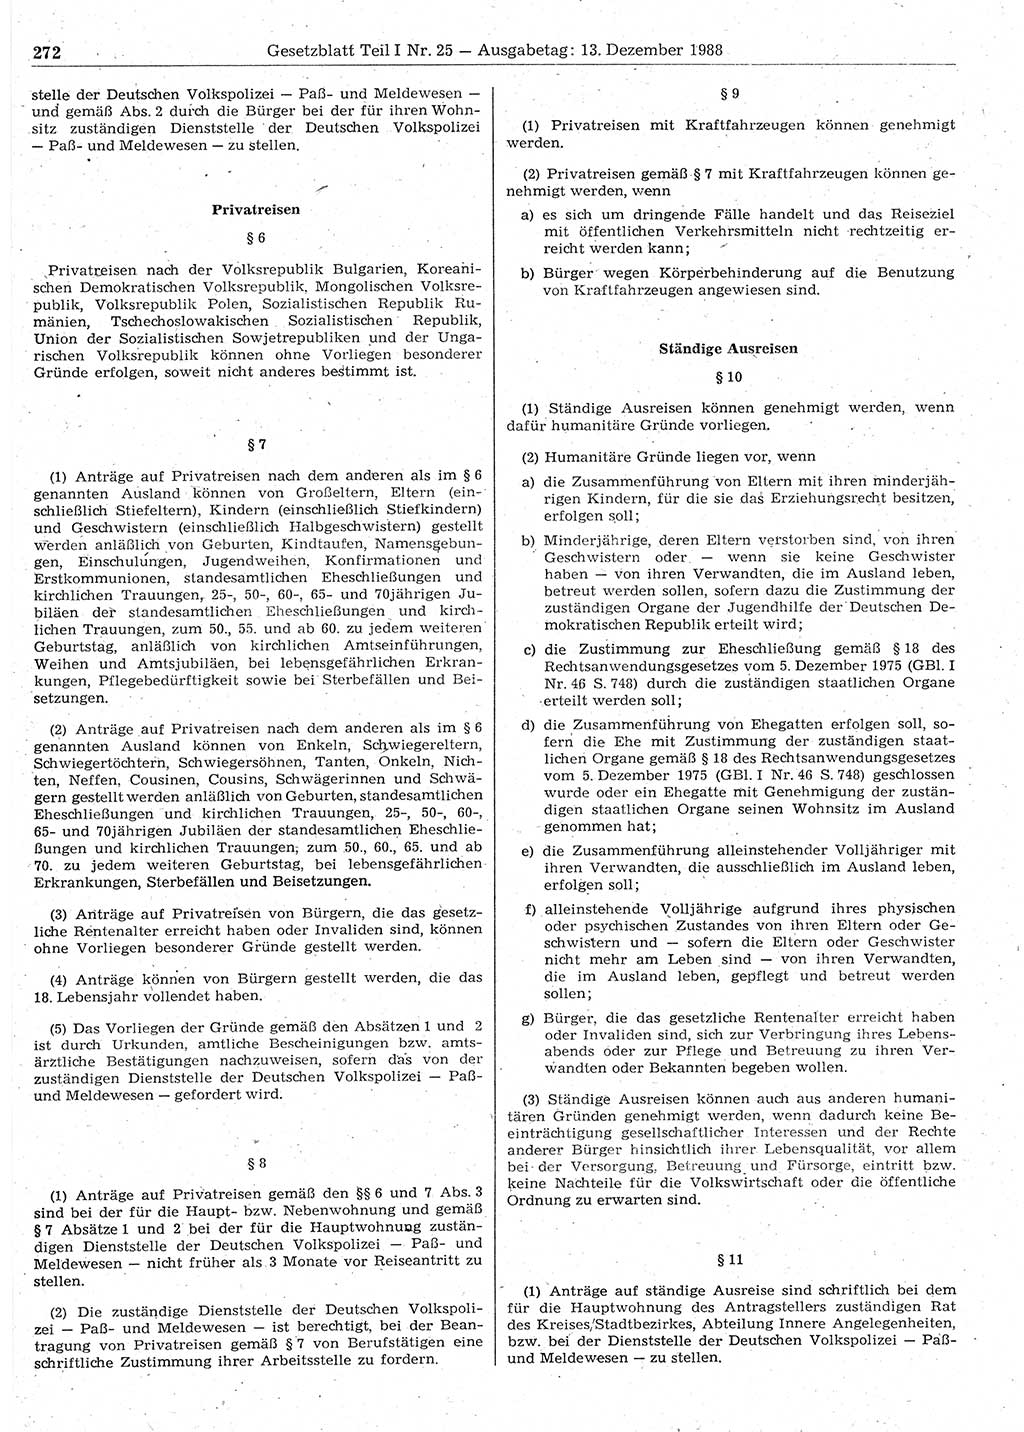 Gesetzblatt (GBl.) der Deutschen Demokratischen Republik (DDR) Teil Ⅰ 1988, Seite 272 (GBl. DDR Ⅰ 1988, S. 272)